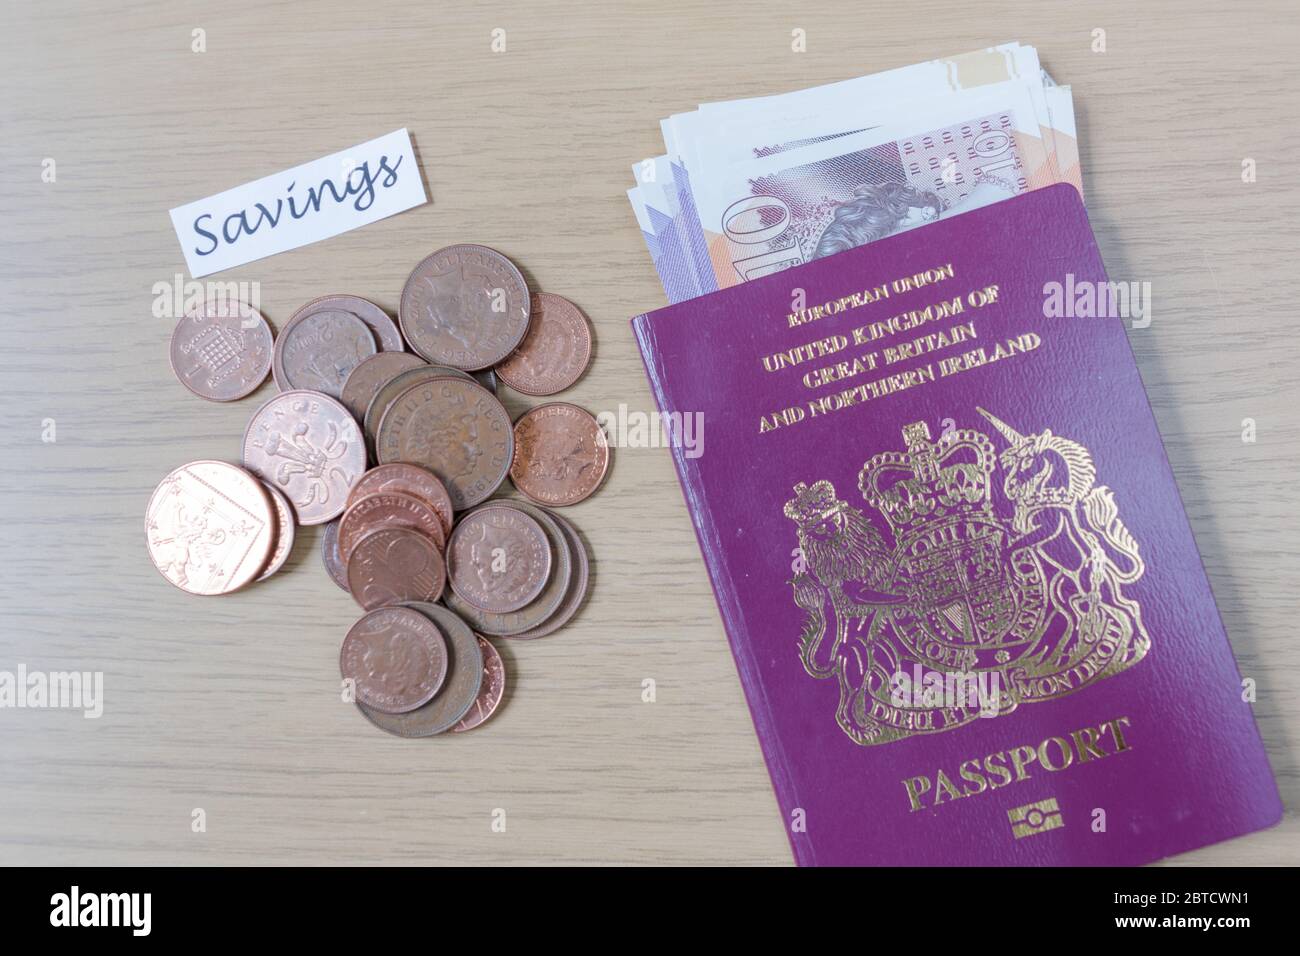 Los centavos del Reino Unido y el pasaporte británico uno al lado del otro en una mesa que simboliza los viajes y los ahorros Foto de stock